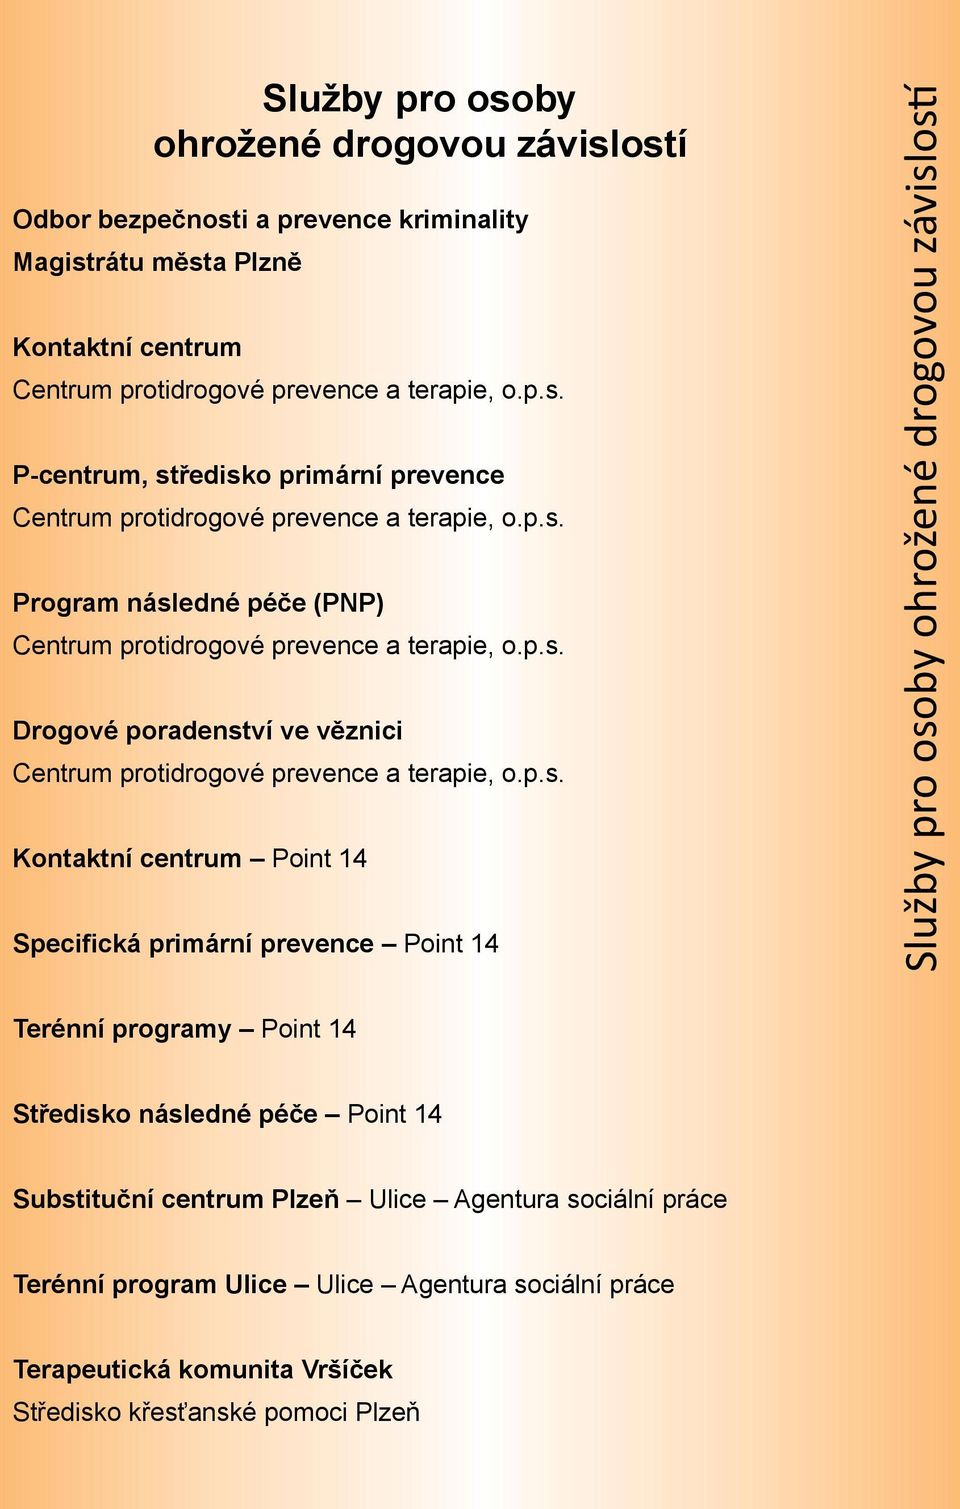 Specifická primární prevence Point 14 Služby pro osoby ohrožené drogovou závislostí Terénní programy Point 14 Středisko následné péče Point 14 Substituční centrum Plzeň Ulice Agentura